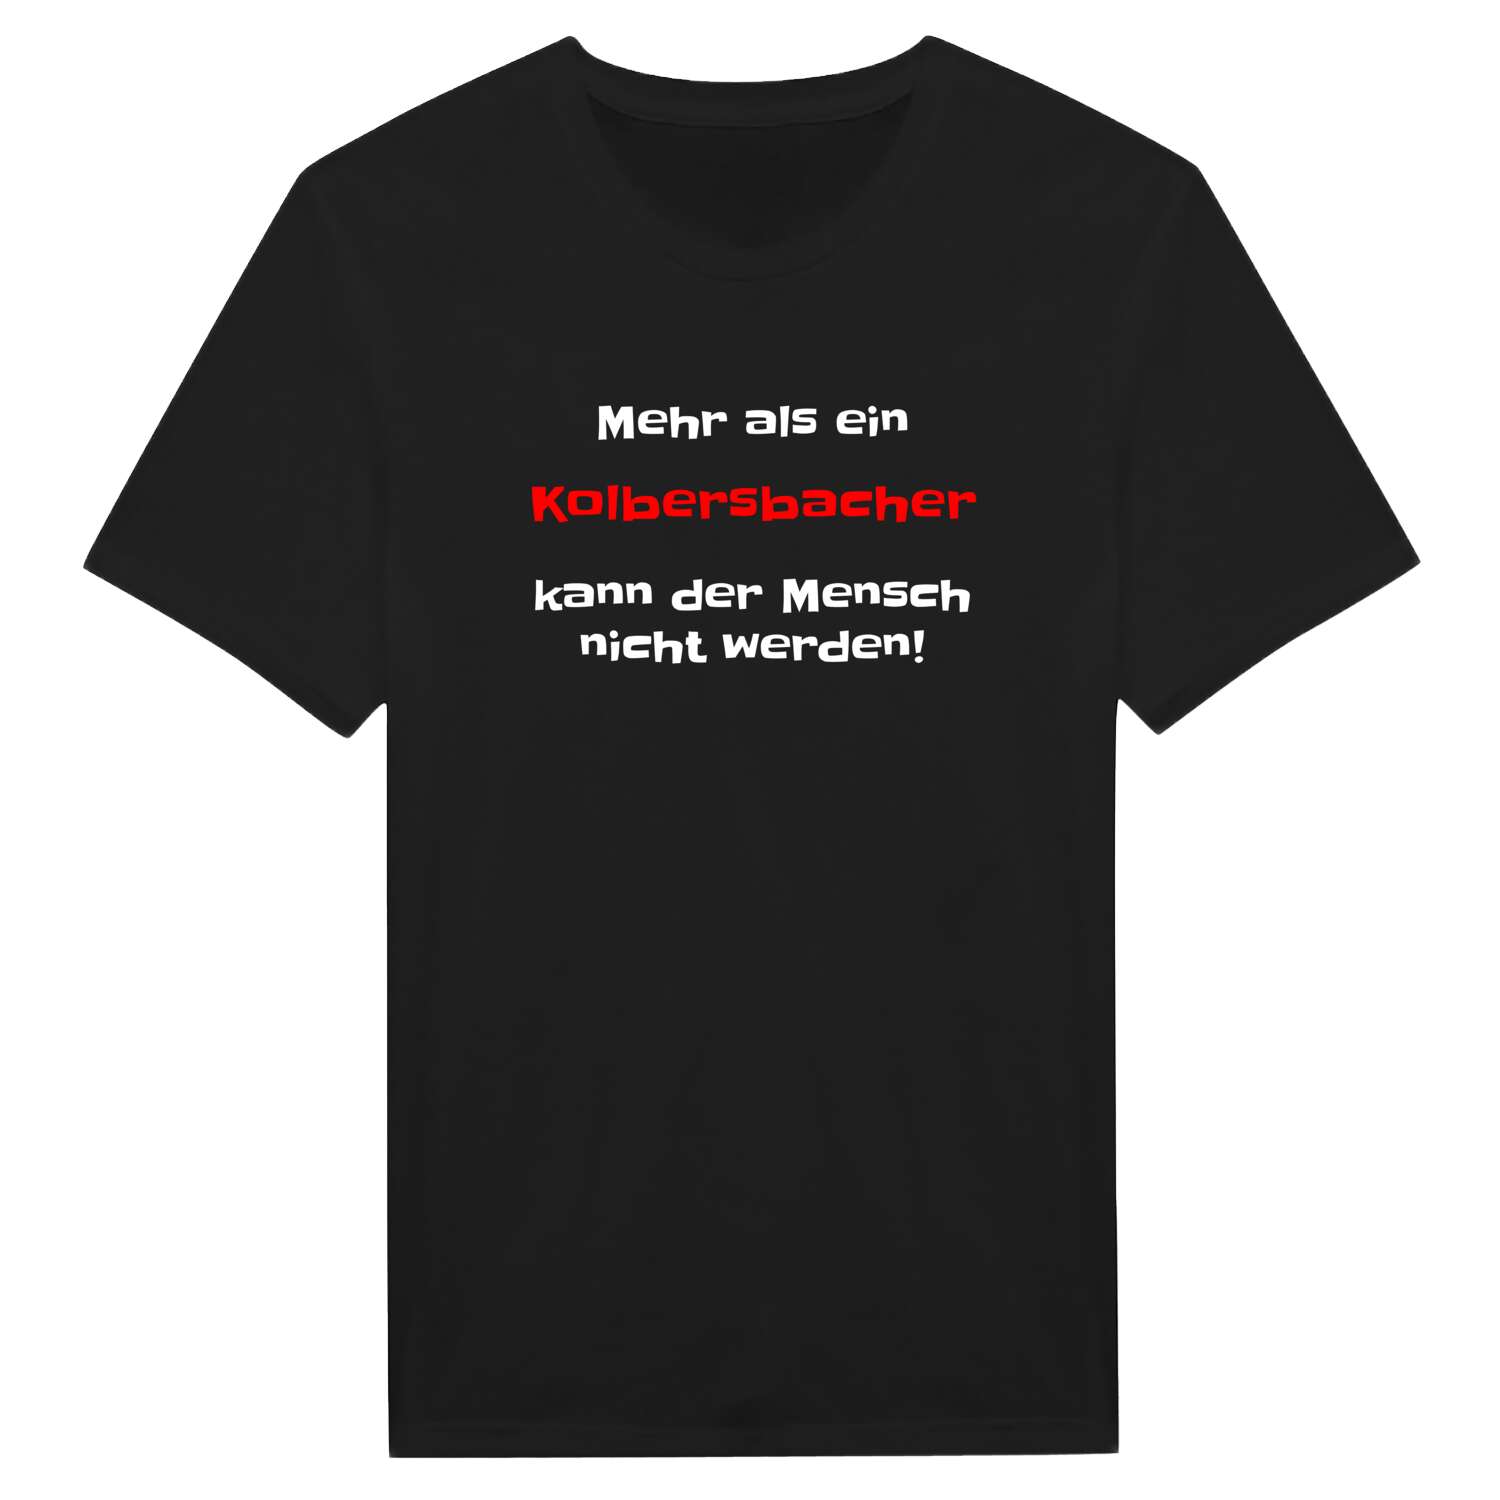 Kolbersbach T-Shirt »Mehr als ein«